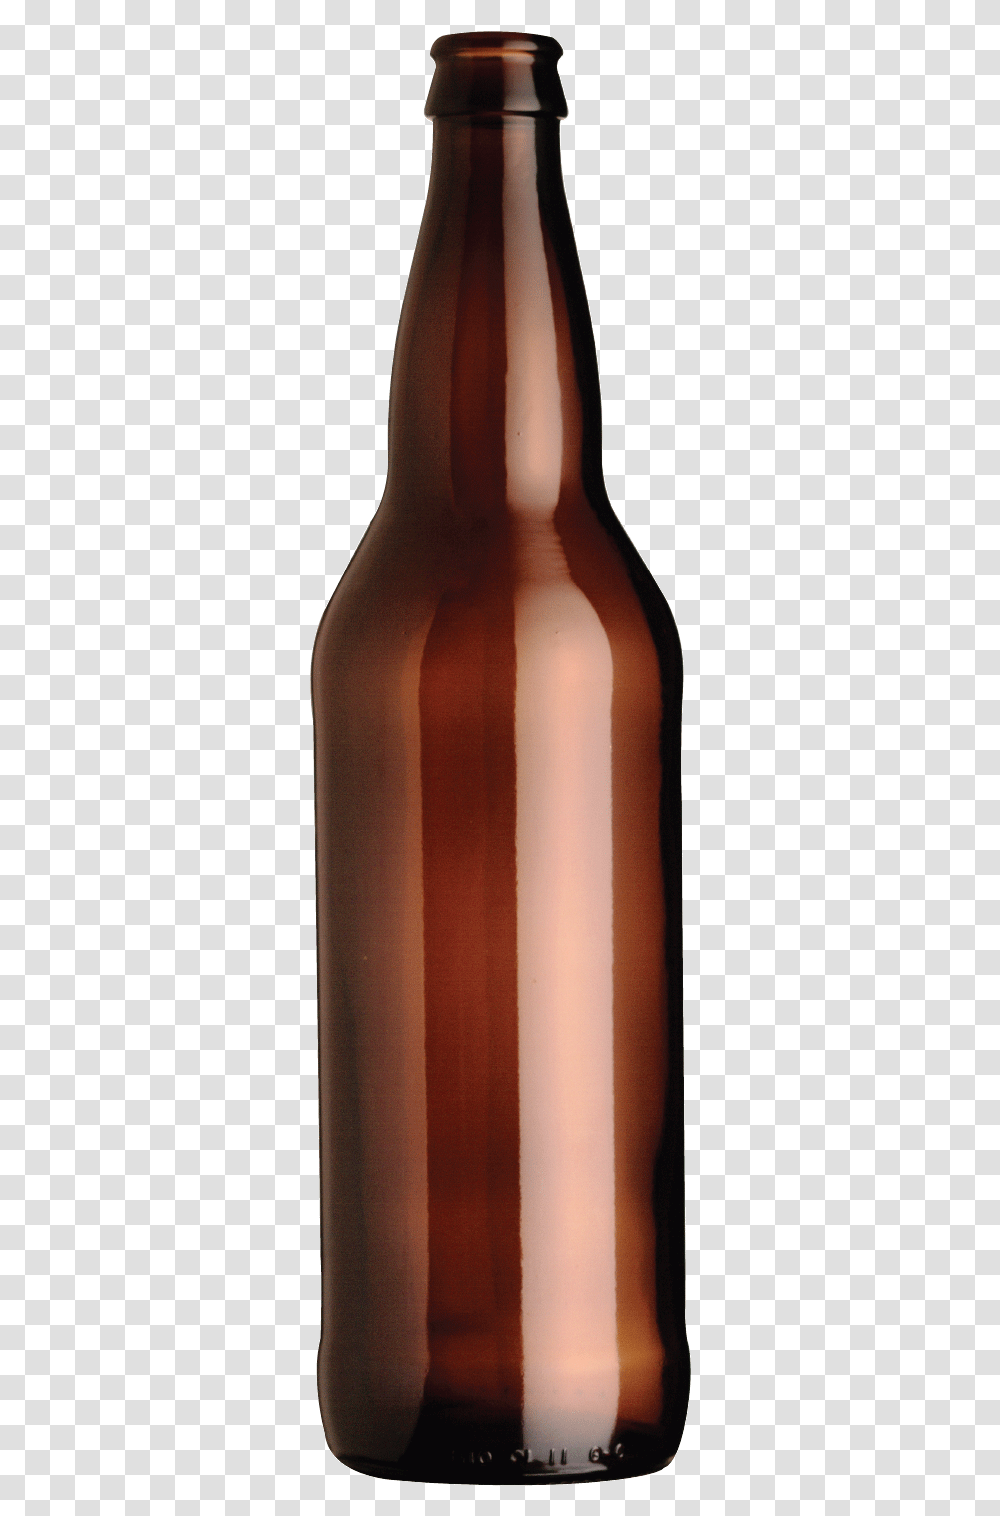 Clip Art Long Neck Long Neck Beer, Alcohol, Beverage, Drink, Bottle Transparent Png